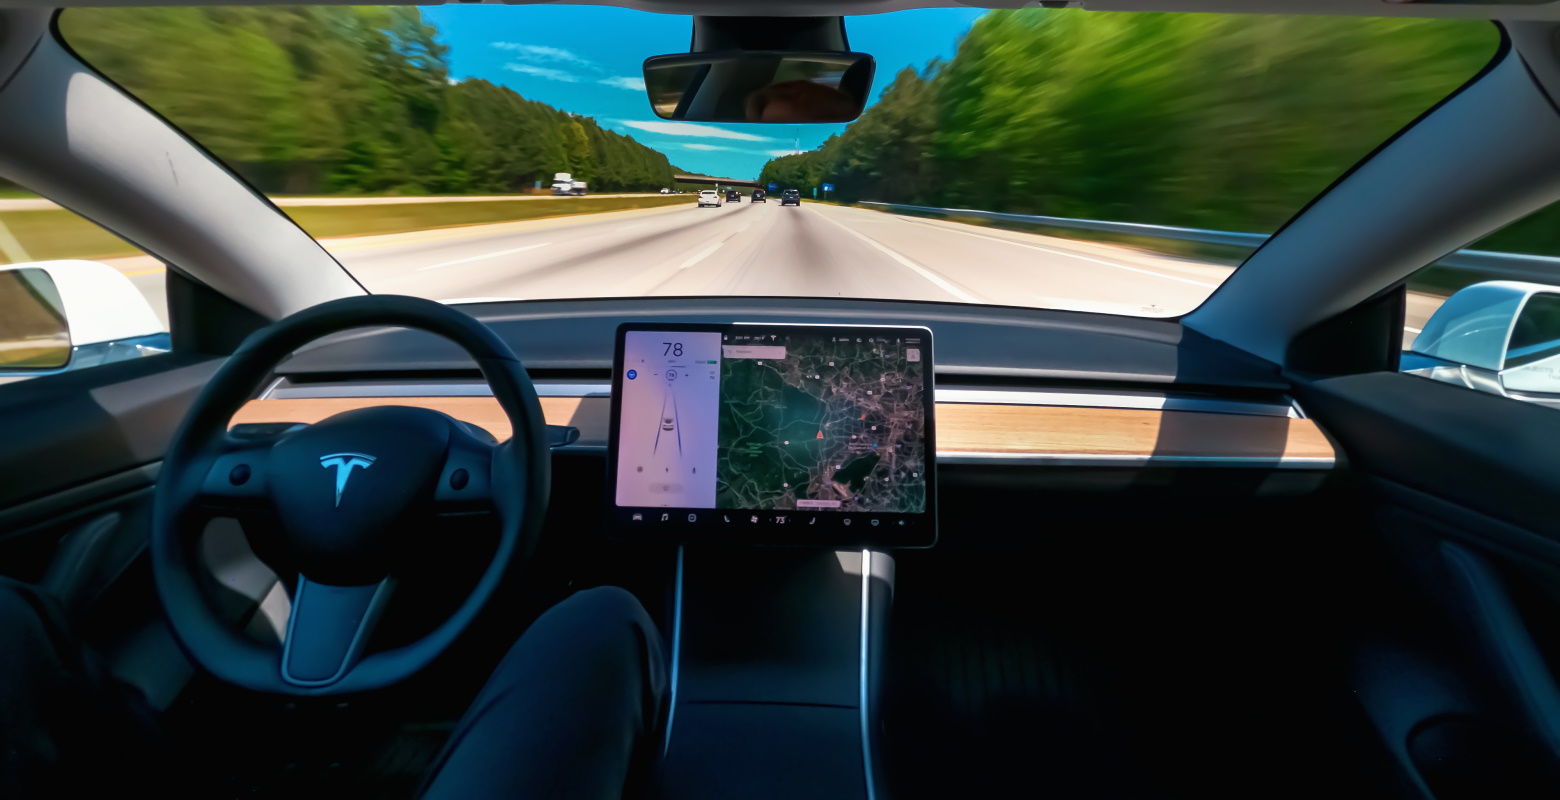 Full Self-Driving : l'option de conduite autonome de Tesla (encore) sous le coup d'une enquête